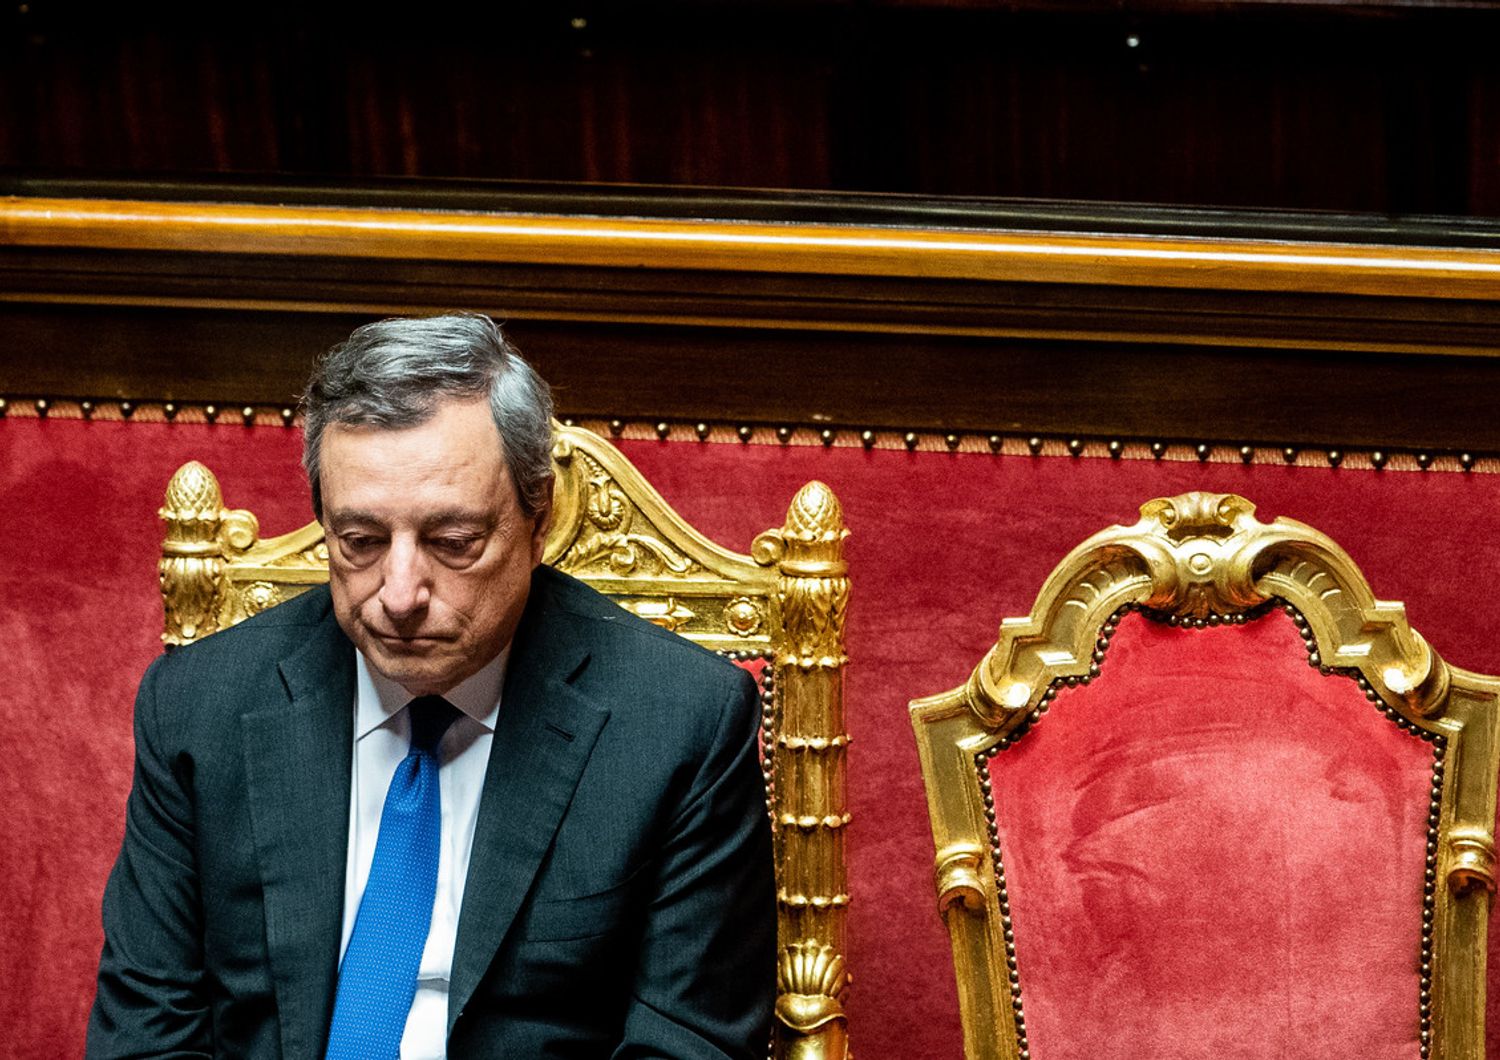 Mario Draghi in Senato